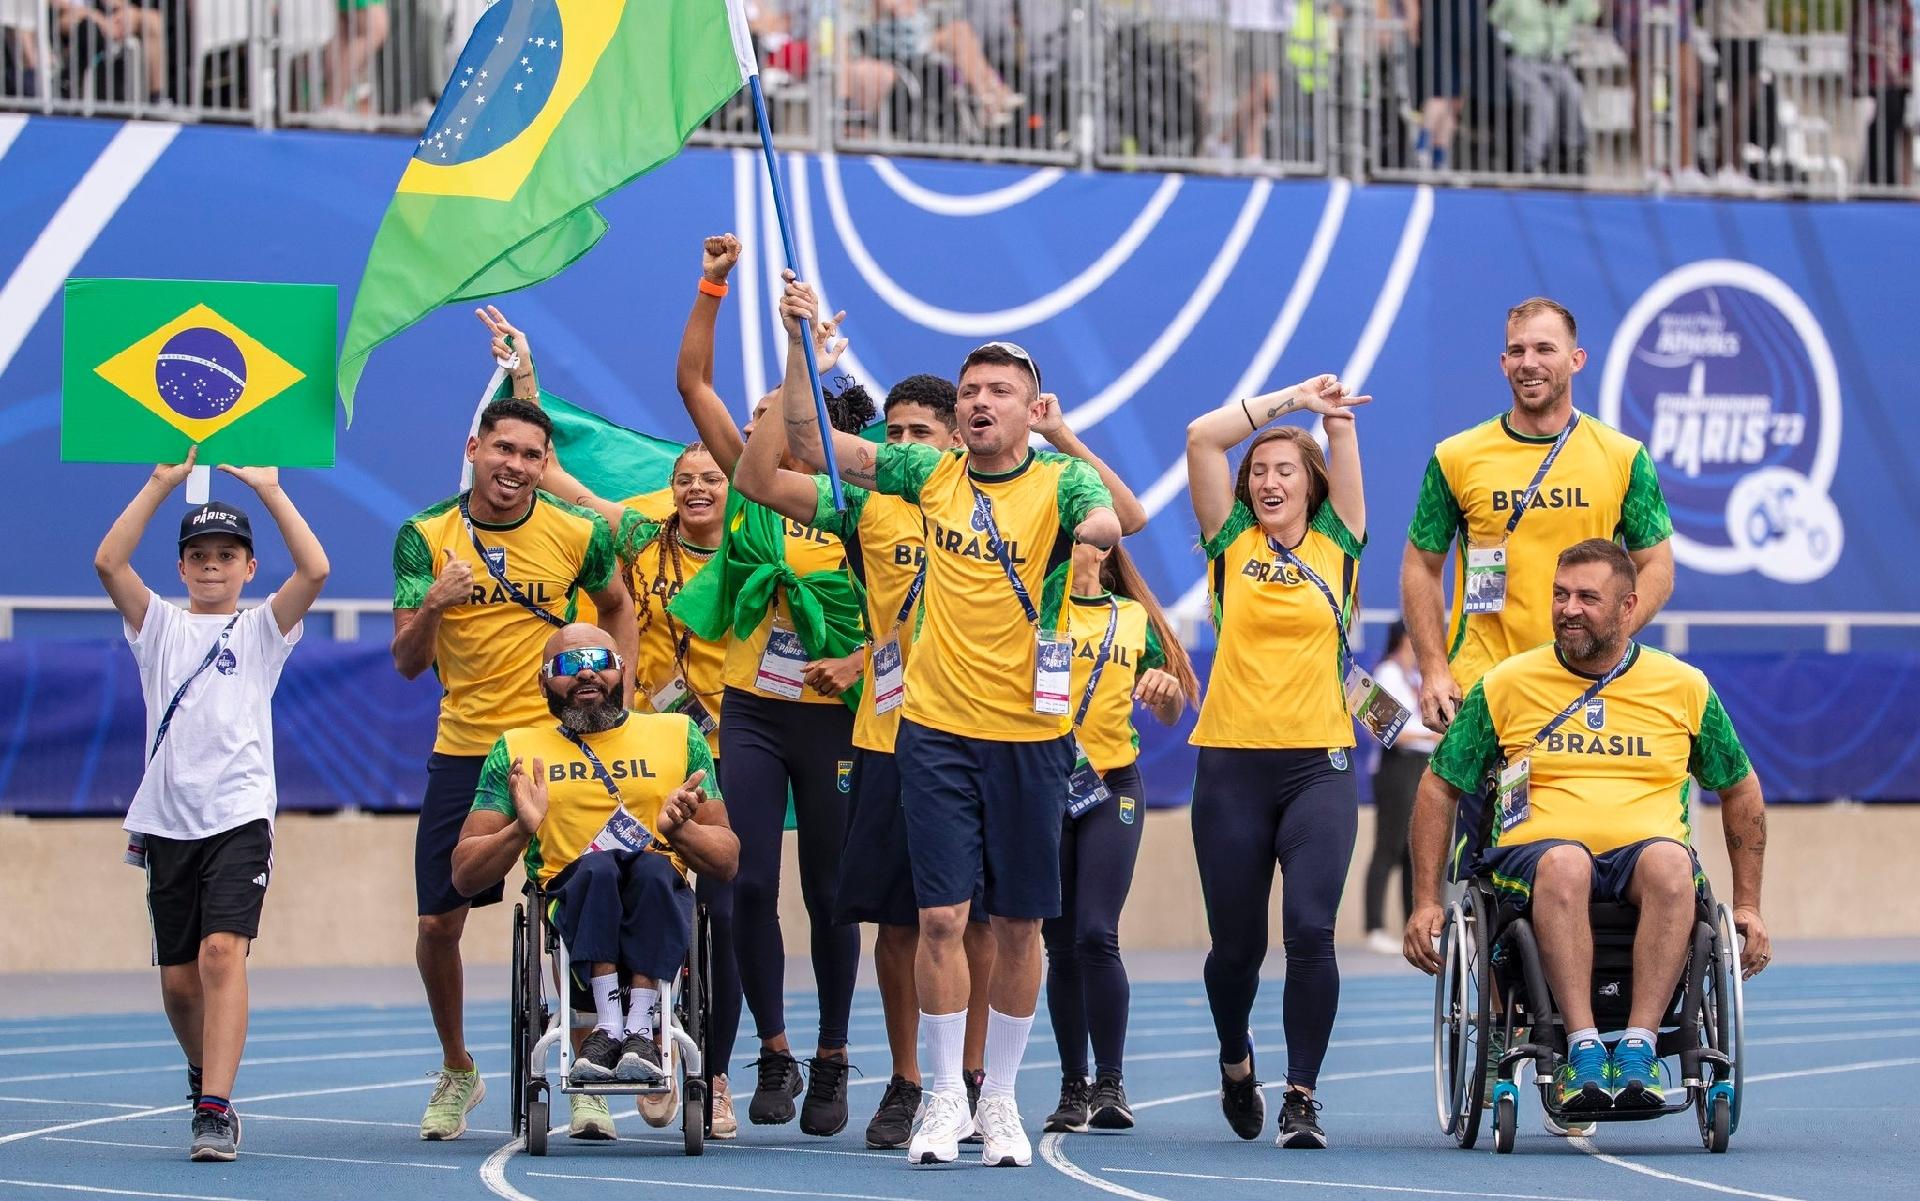 É amanhã! Prêmio Paralímpicos homenageia melhores atletas de 24 modalidades  em 2023 na 1ª noite do evento - CPB